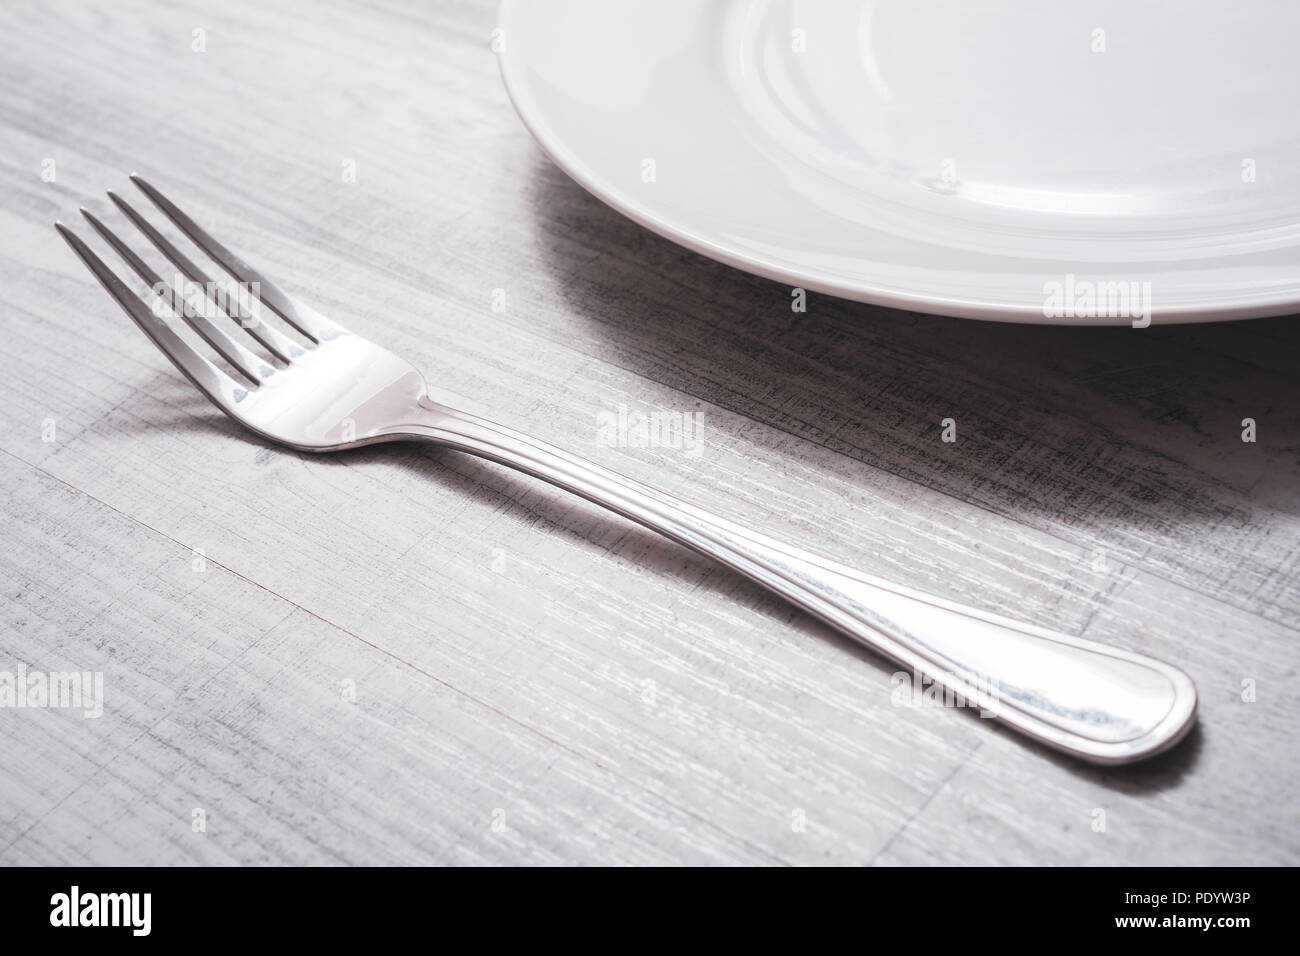 Fourche en acier inoxydable sur une table à côté d'une assiette - préparer le dîner Concept Banque D'Images